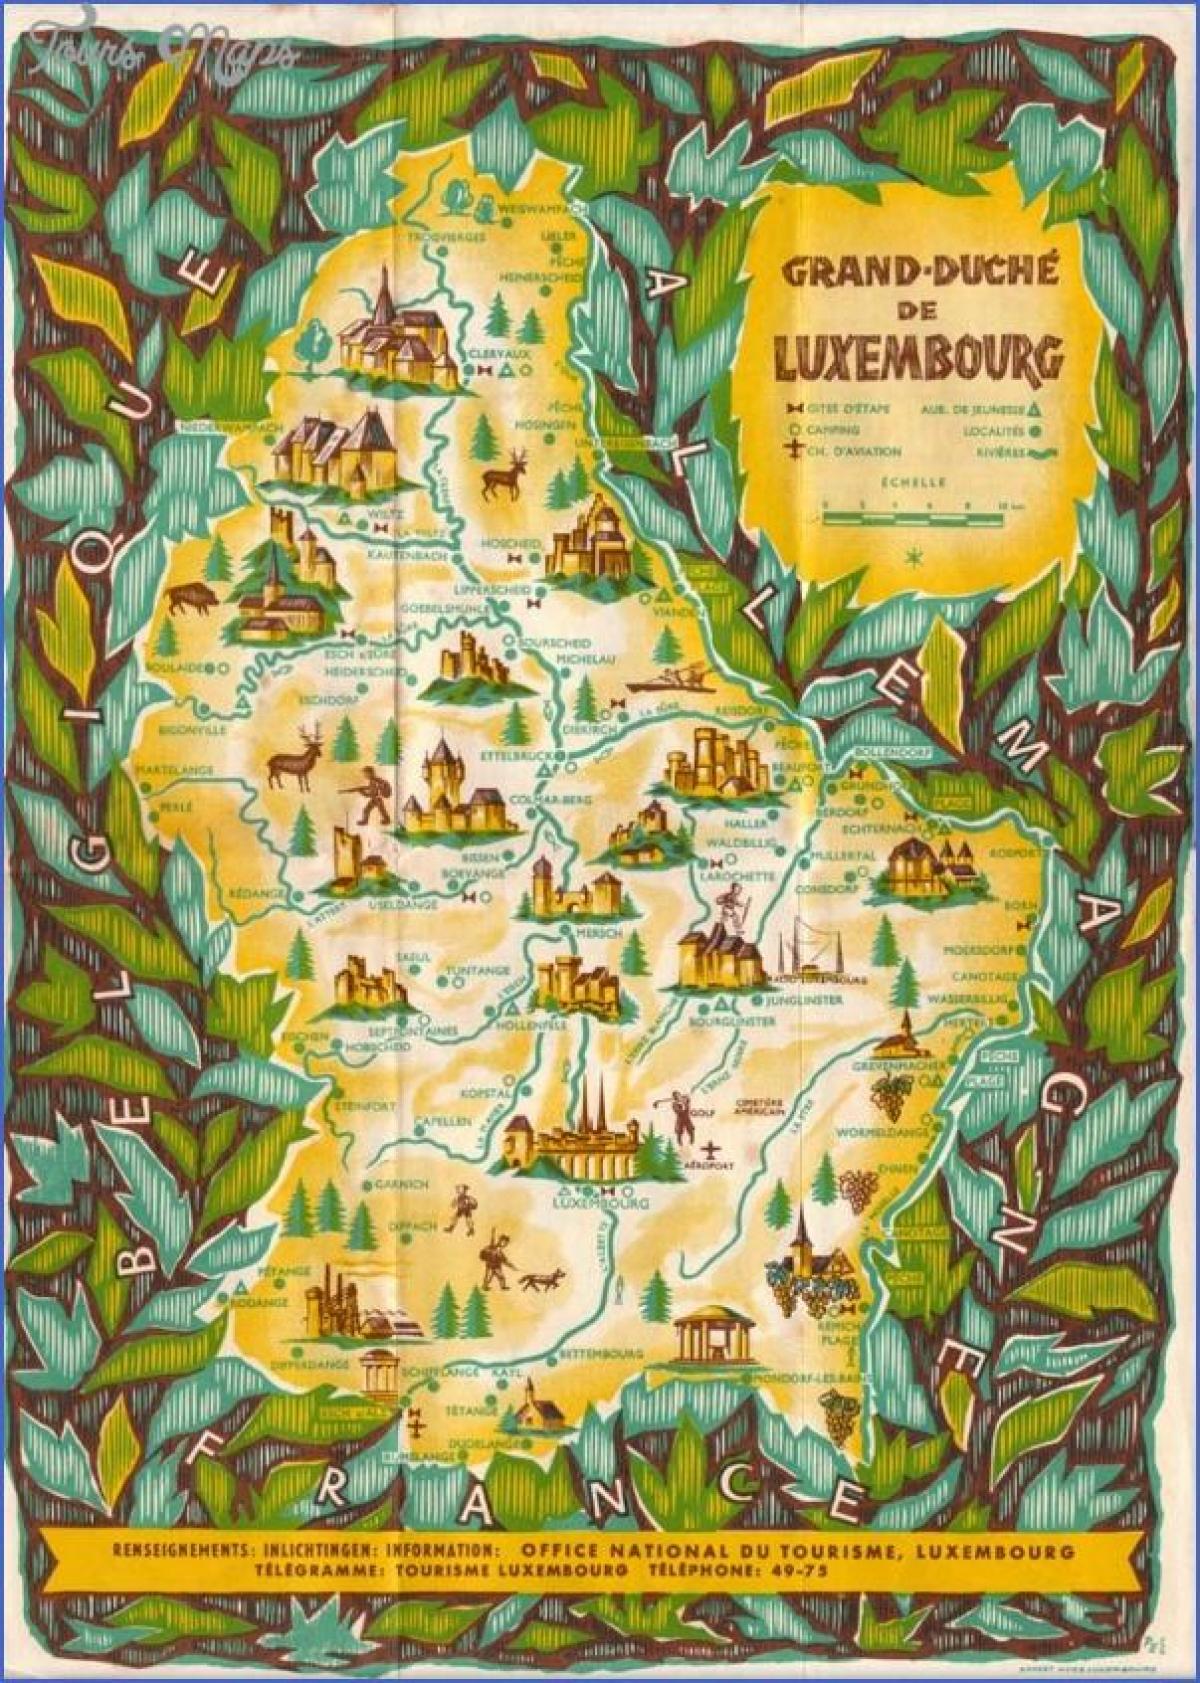 नक्शा लक्समबर्ग के पर्यटन स्थलों का भ्रमण